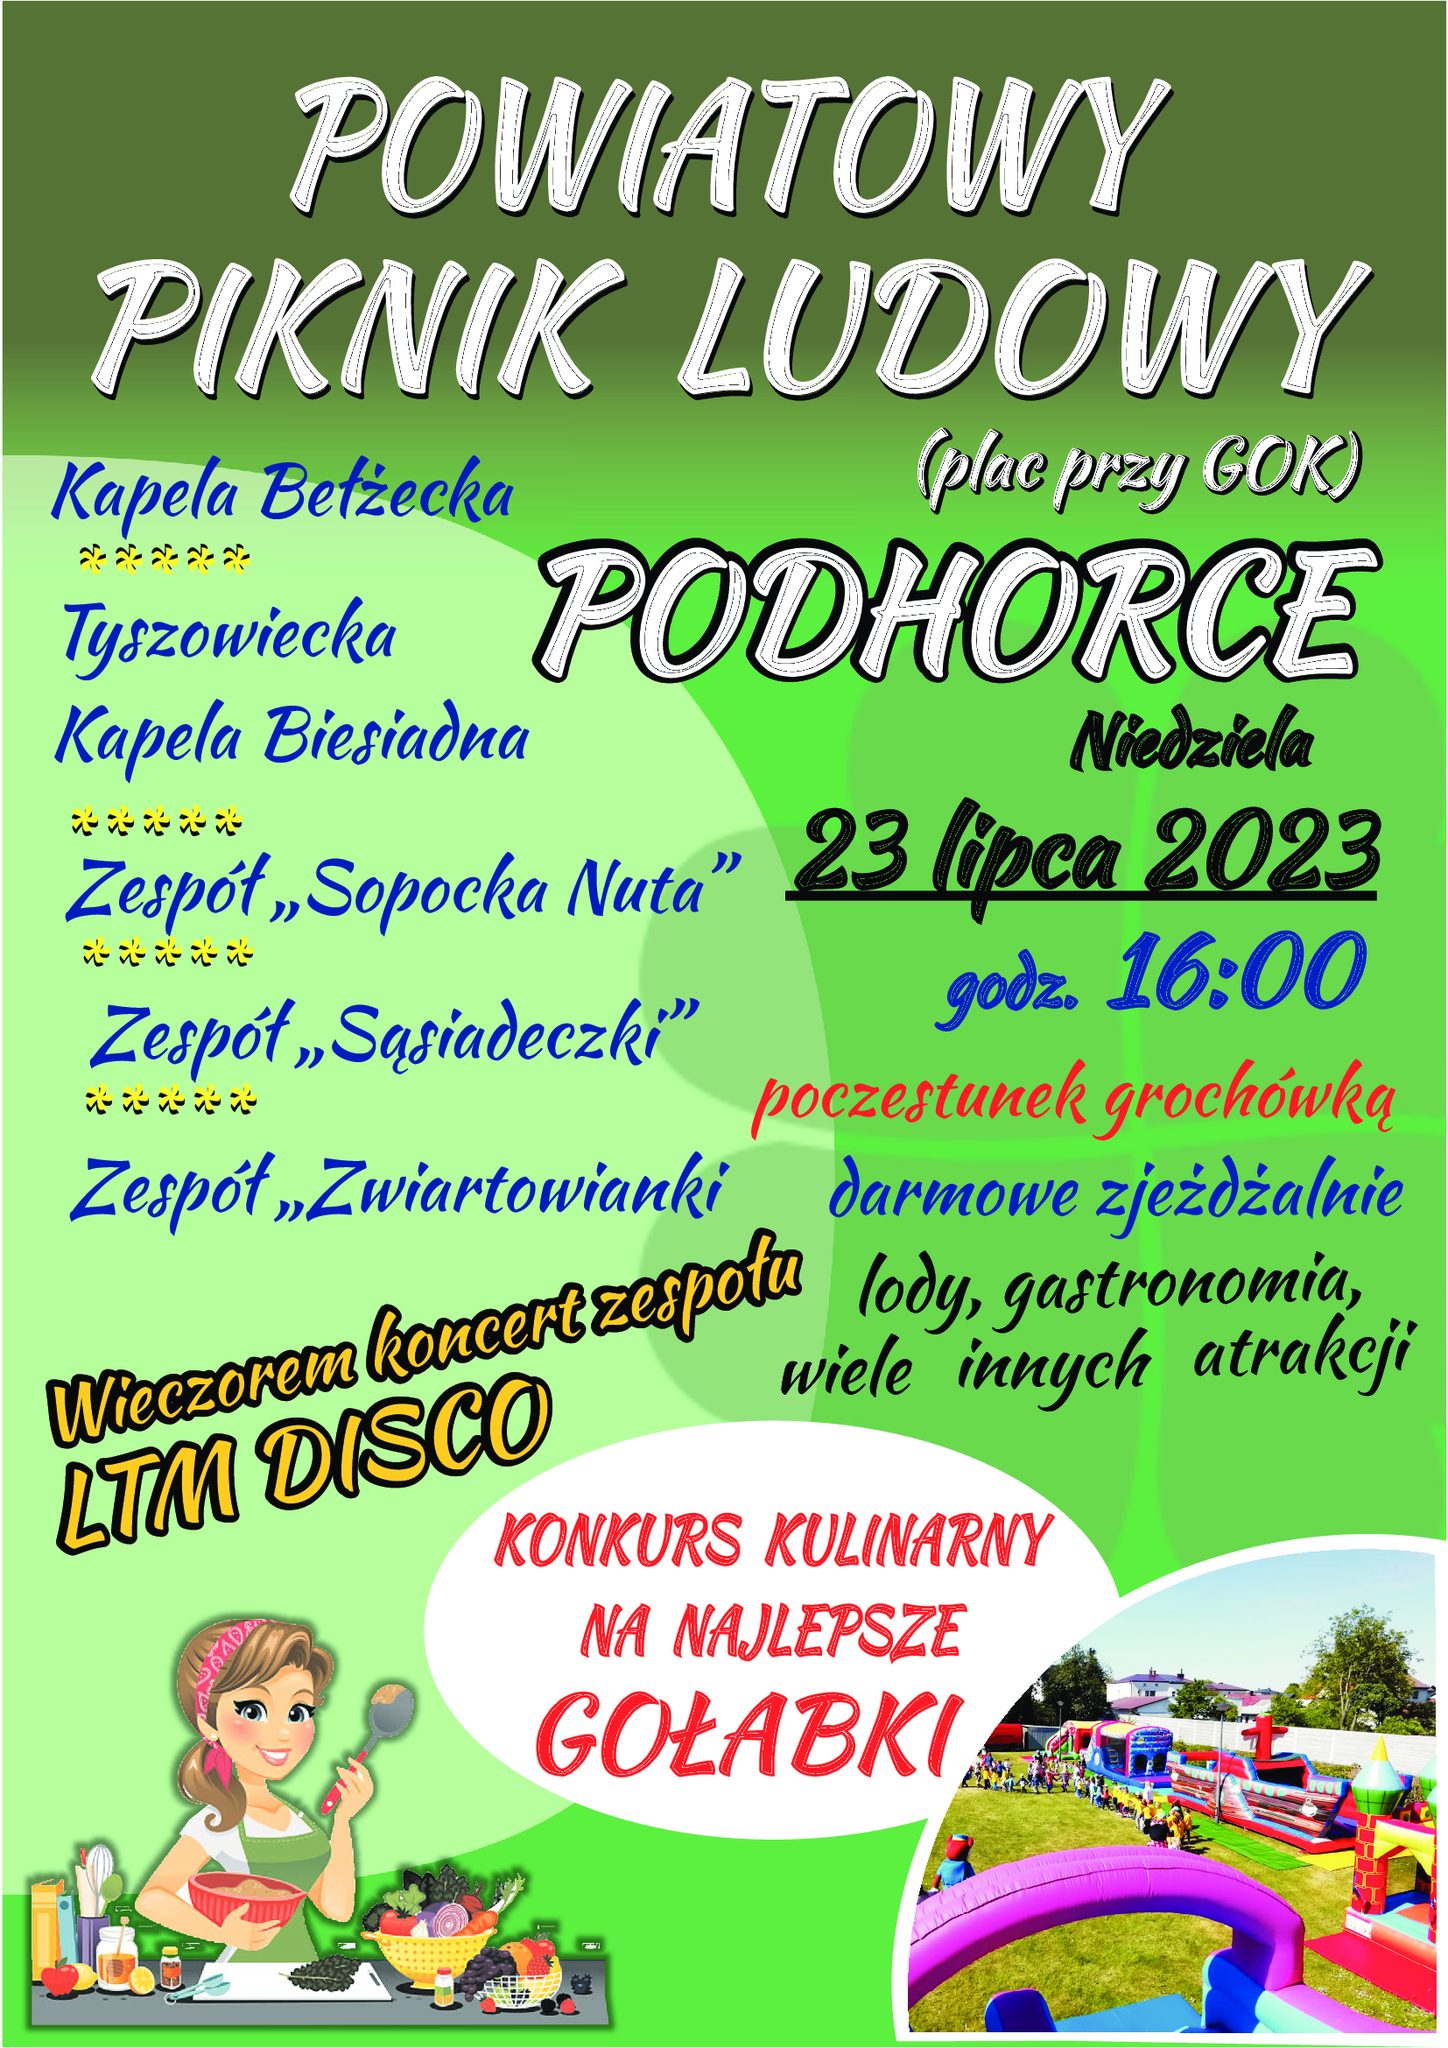 Powiatowy Piknik Ludowy w Podhorcach